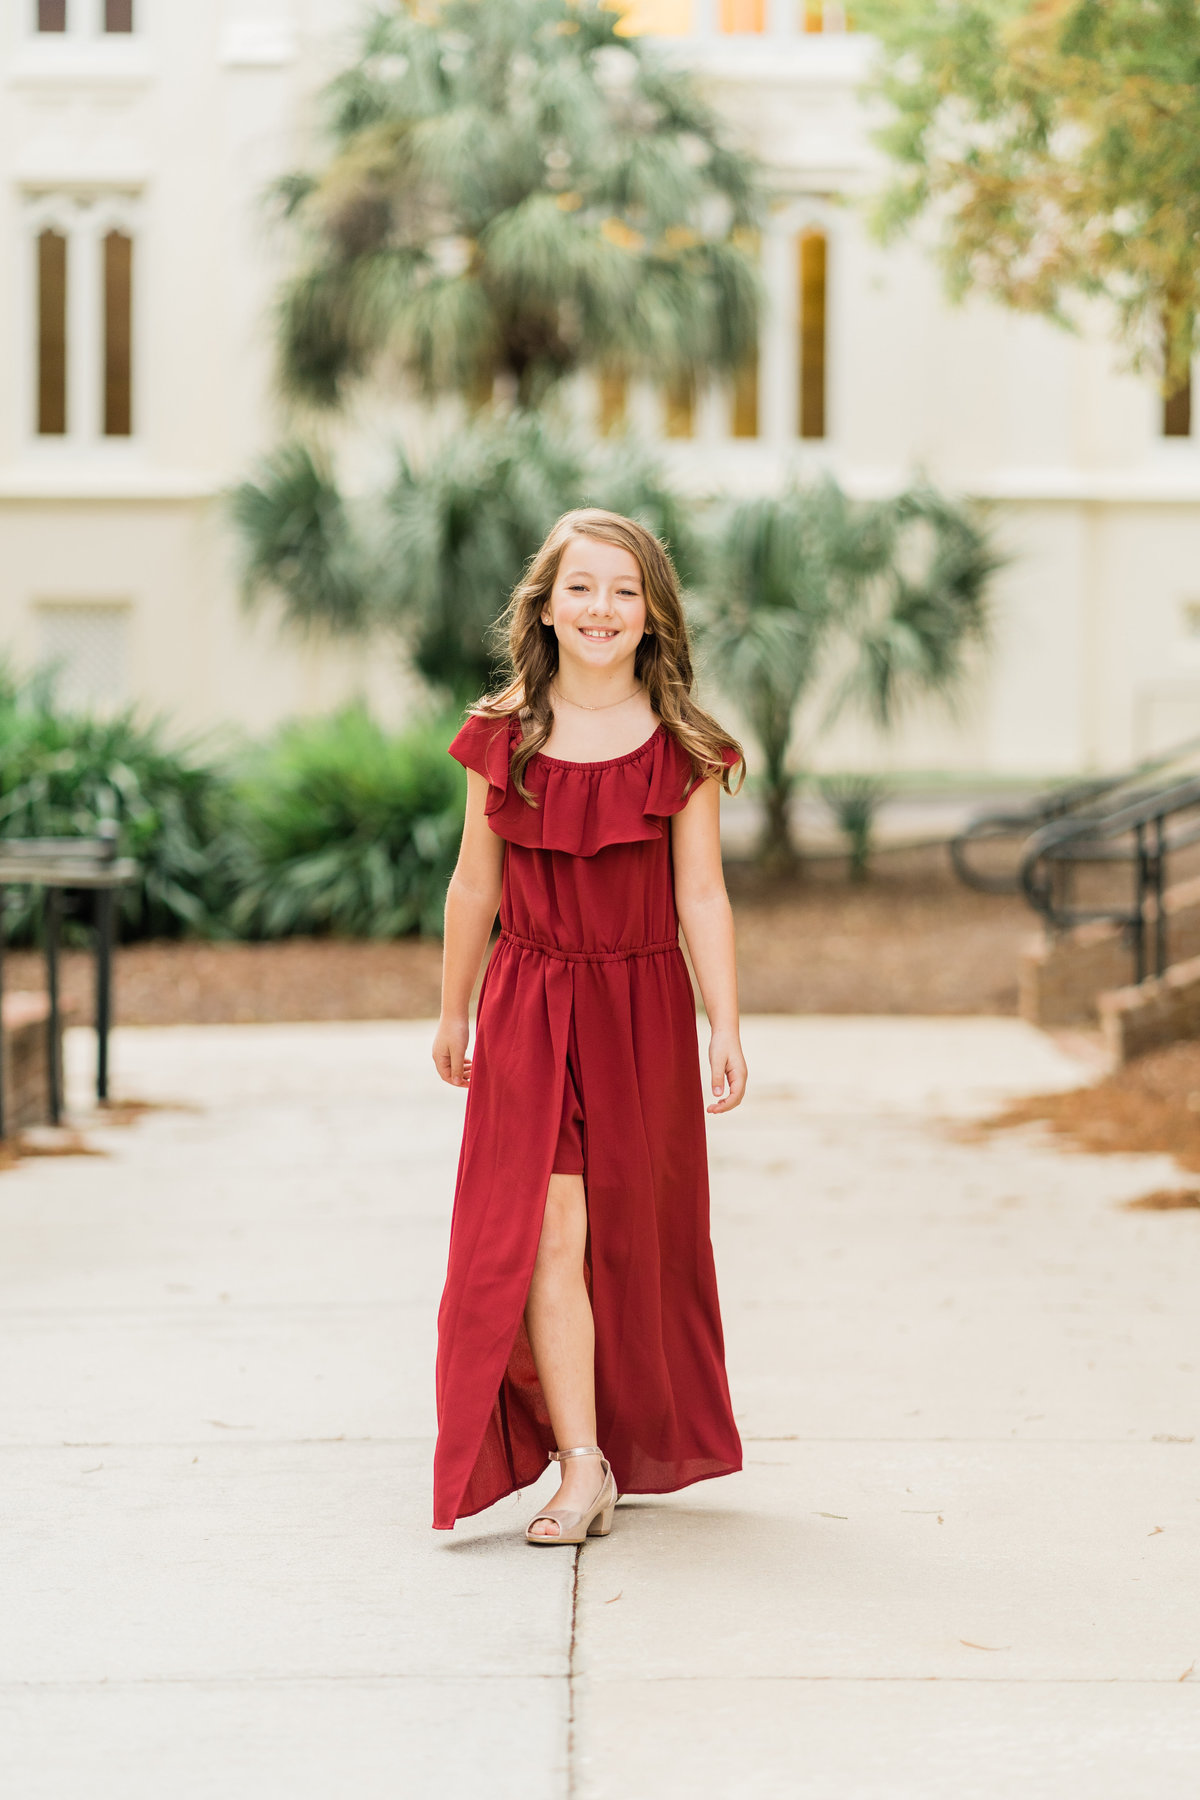 Girl in red dress in park in Alabama